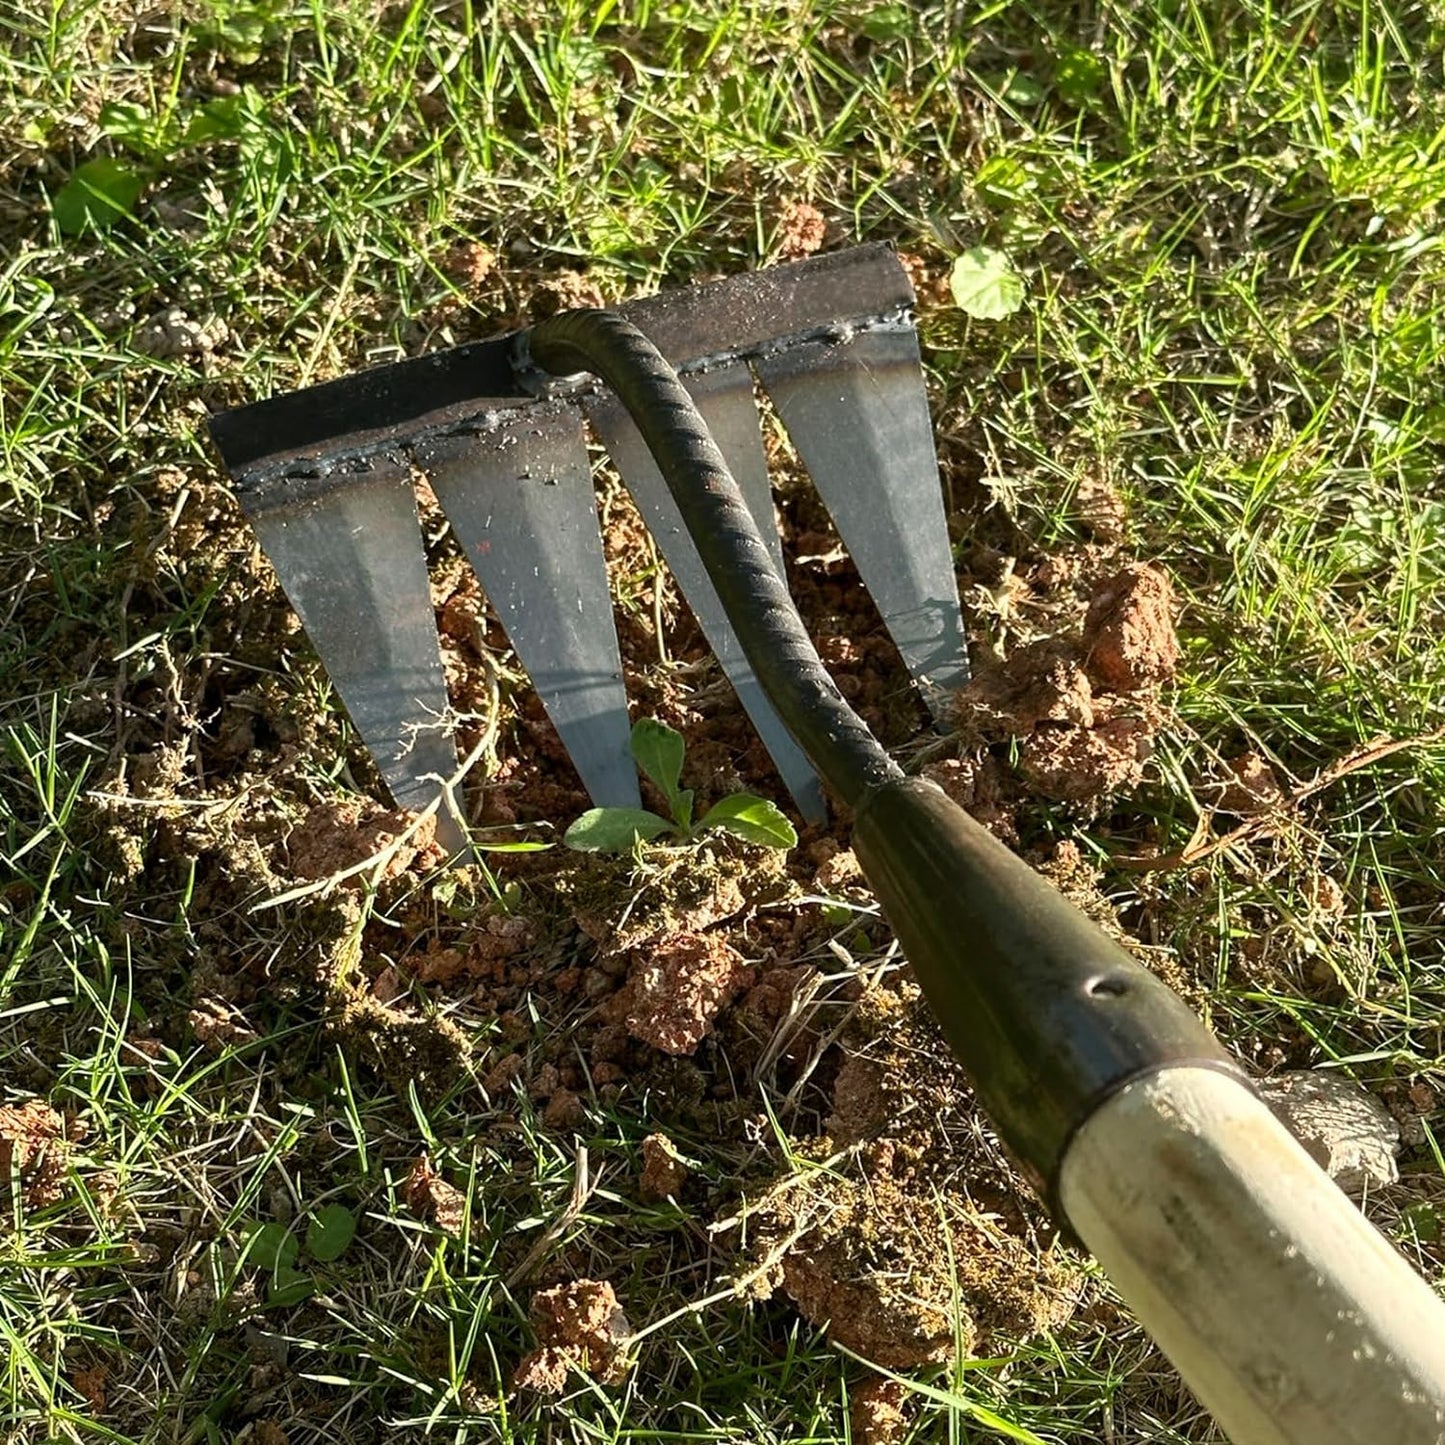 2 PCS Carbon Garden Hand Rake Tool Metal Heavy Duty Weeding Rake Iron Hoe Rake For Backyard Gardening Weeding Loosening Farm Planting - 4 And 6 Tines